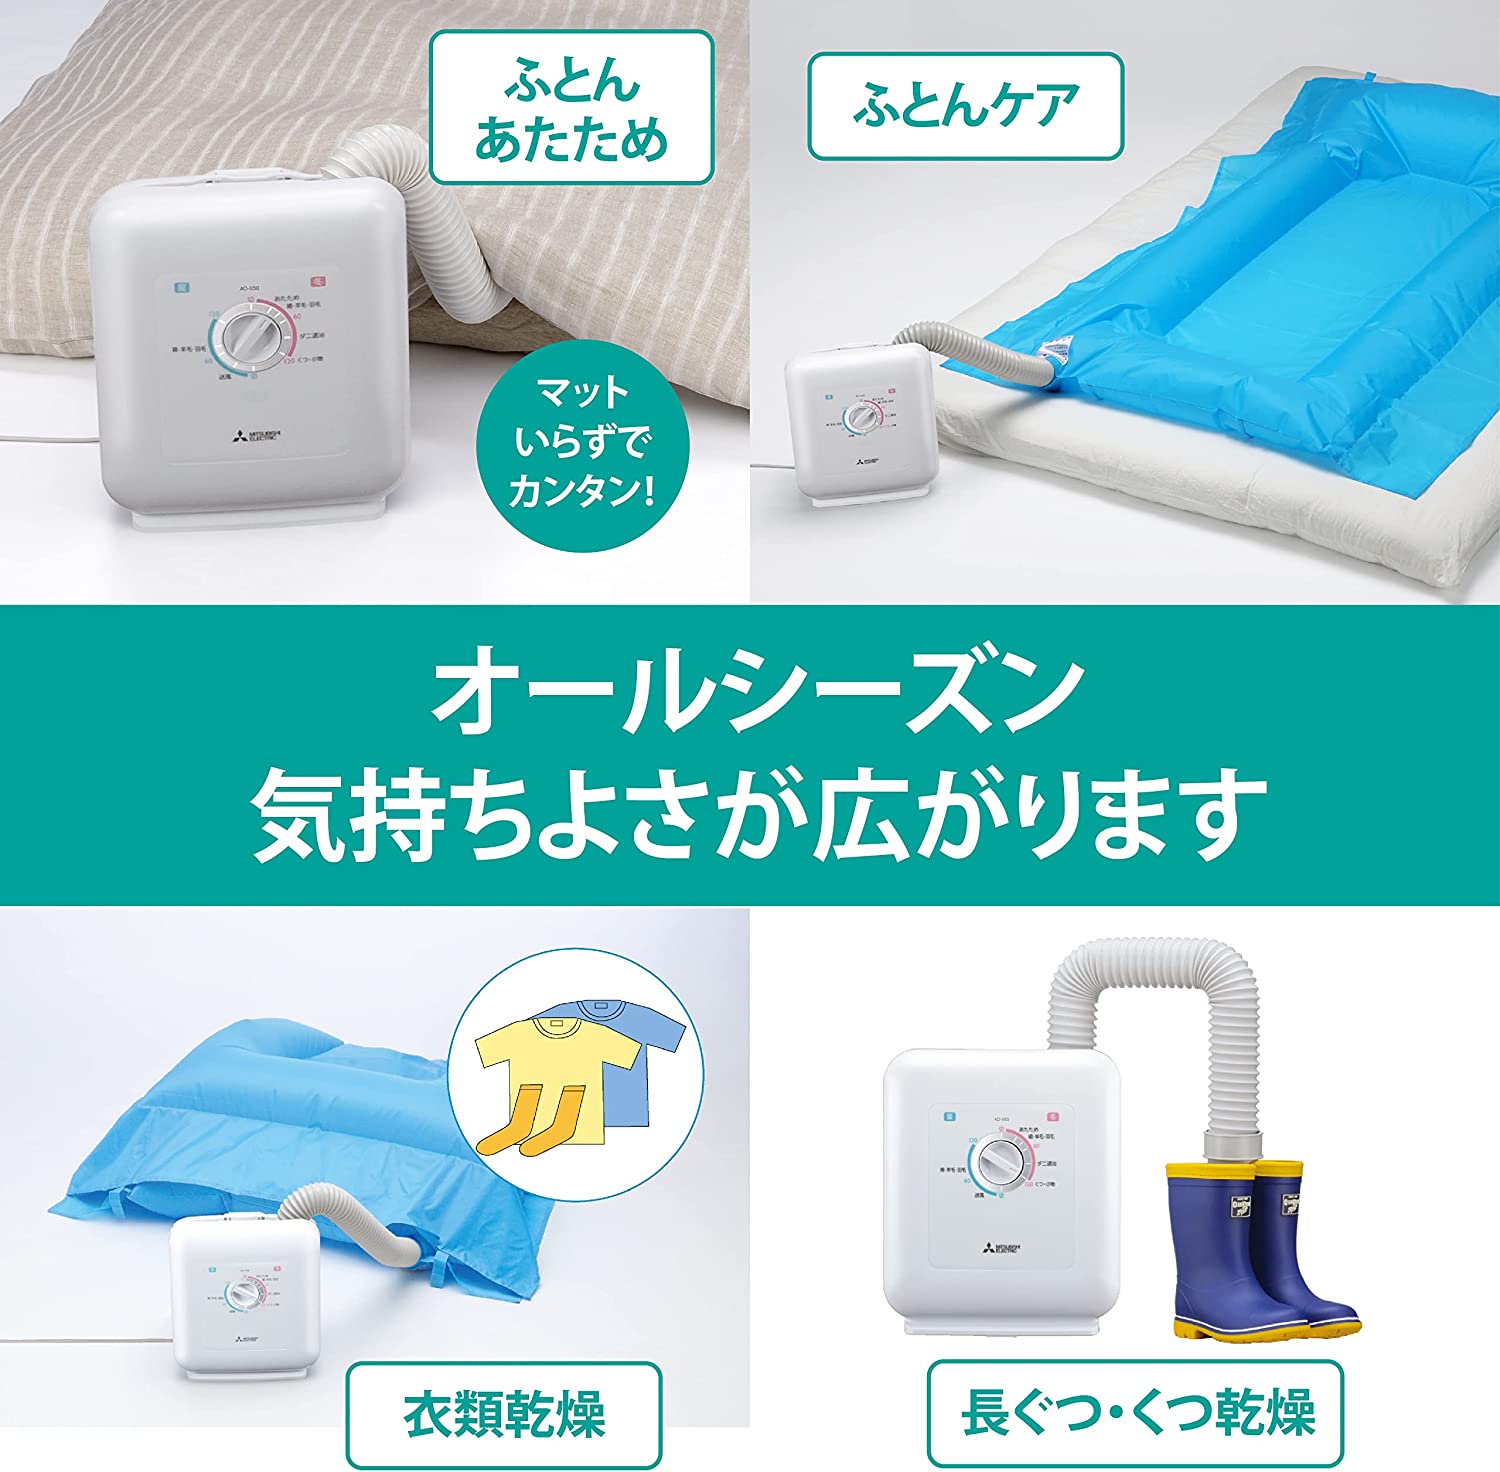 日本代購】MITSUBISHI 三菱電機被褥乾燥機烘被機AD-X50-W | 及時雨百貨 